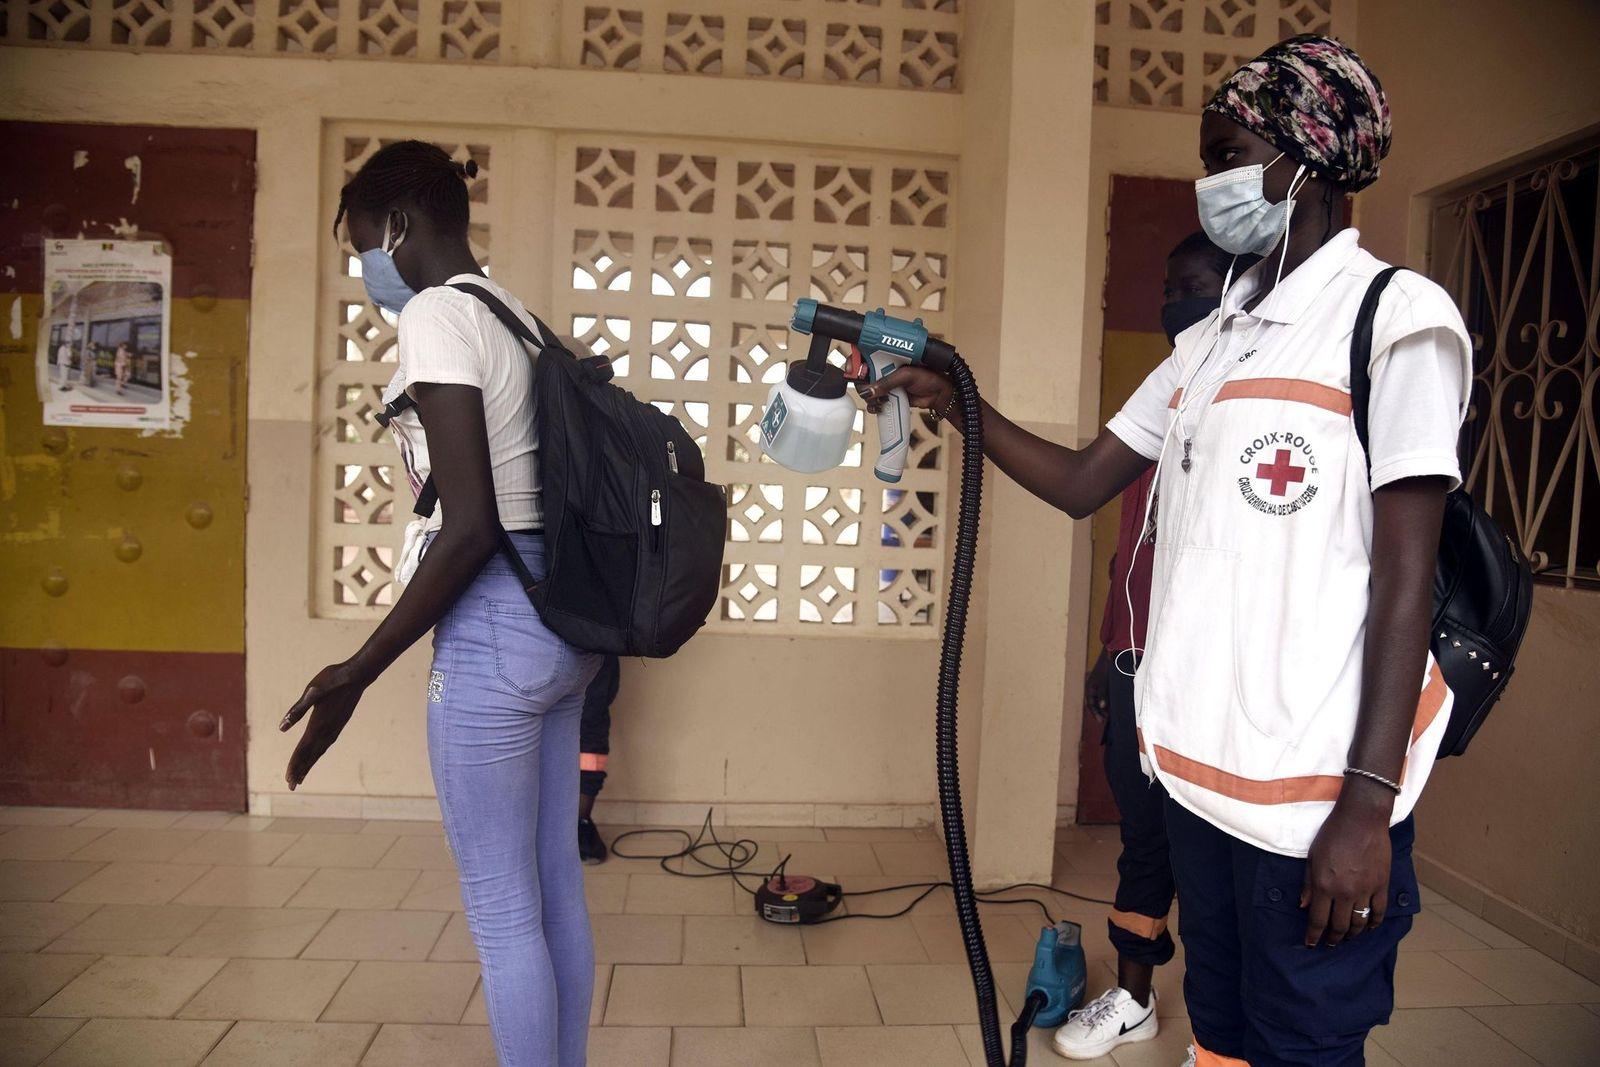 العلوم في أسبوع: السنغال تجابه كورونا ببراعة، وأطفال كريسبر في خطر!